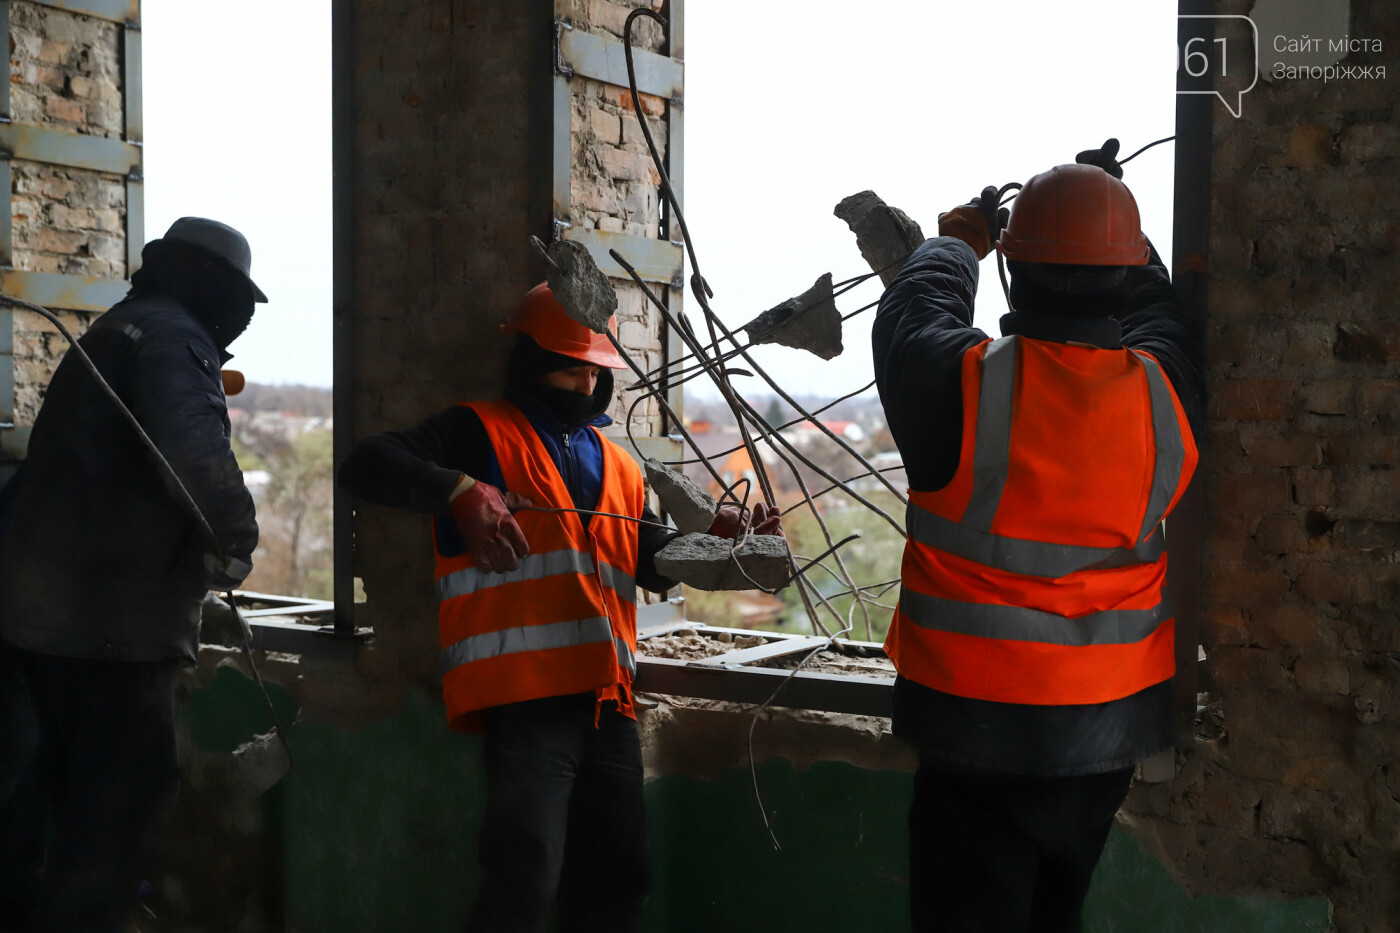 В Запорожье восстанавливают школу, которая пострадала во время масштабного пожара 5 лет назад, - ФОТОРЕПОРТАЖ , фото-48